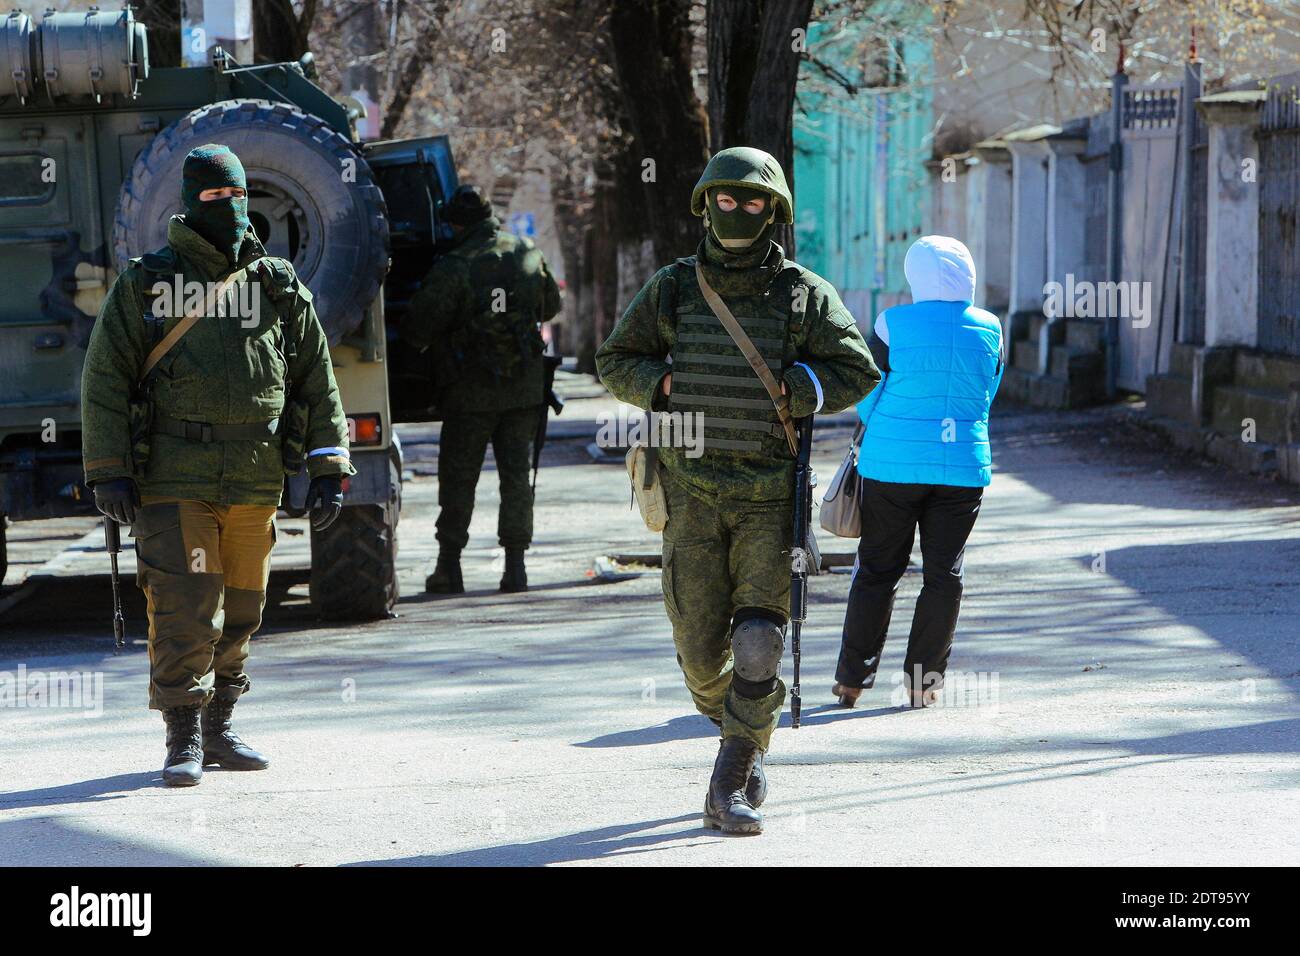 Bewaffnete Männer, die angeblich russische Soldaten sind, stehen vor einer ukrainischen Militärbasis in Simferopol auf der Krim Wache. Simferopol, Ukraine, am 17. März 2014. Fotos von Rafael Yaghobzadeh/ABACAPRESS.COM Stockfoto